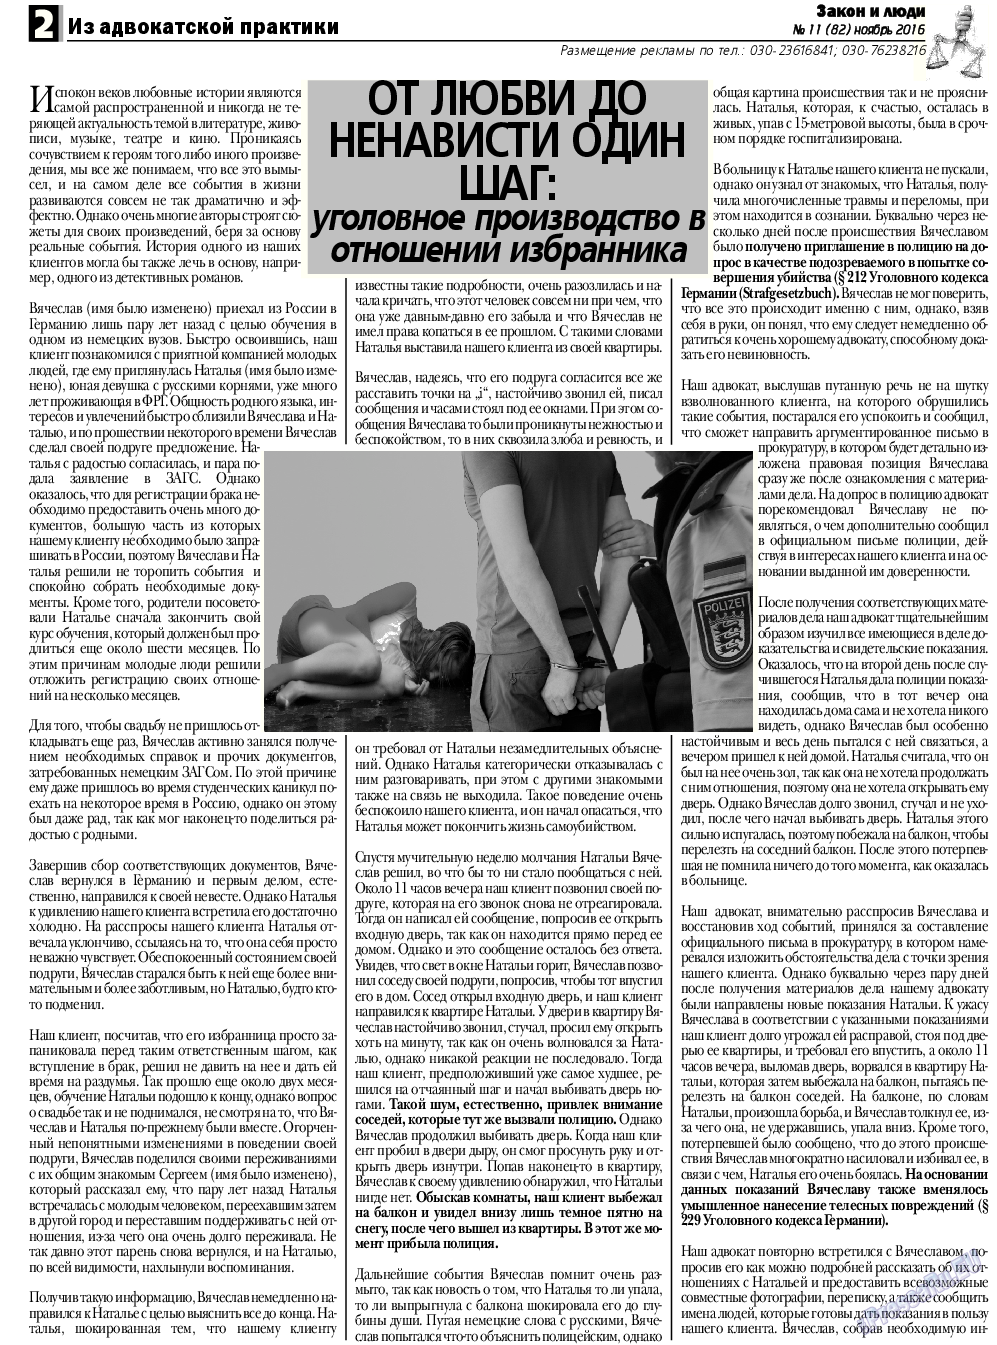 Закон и люди, газета. 2016 №11 стр.2